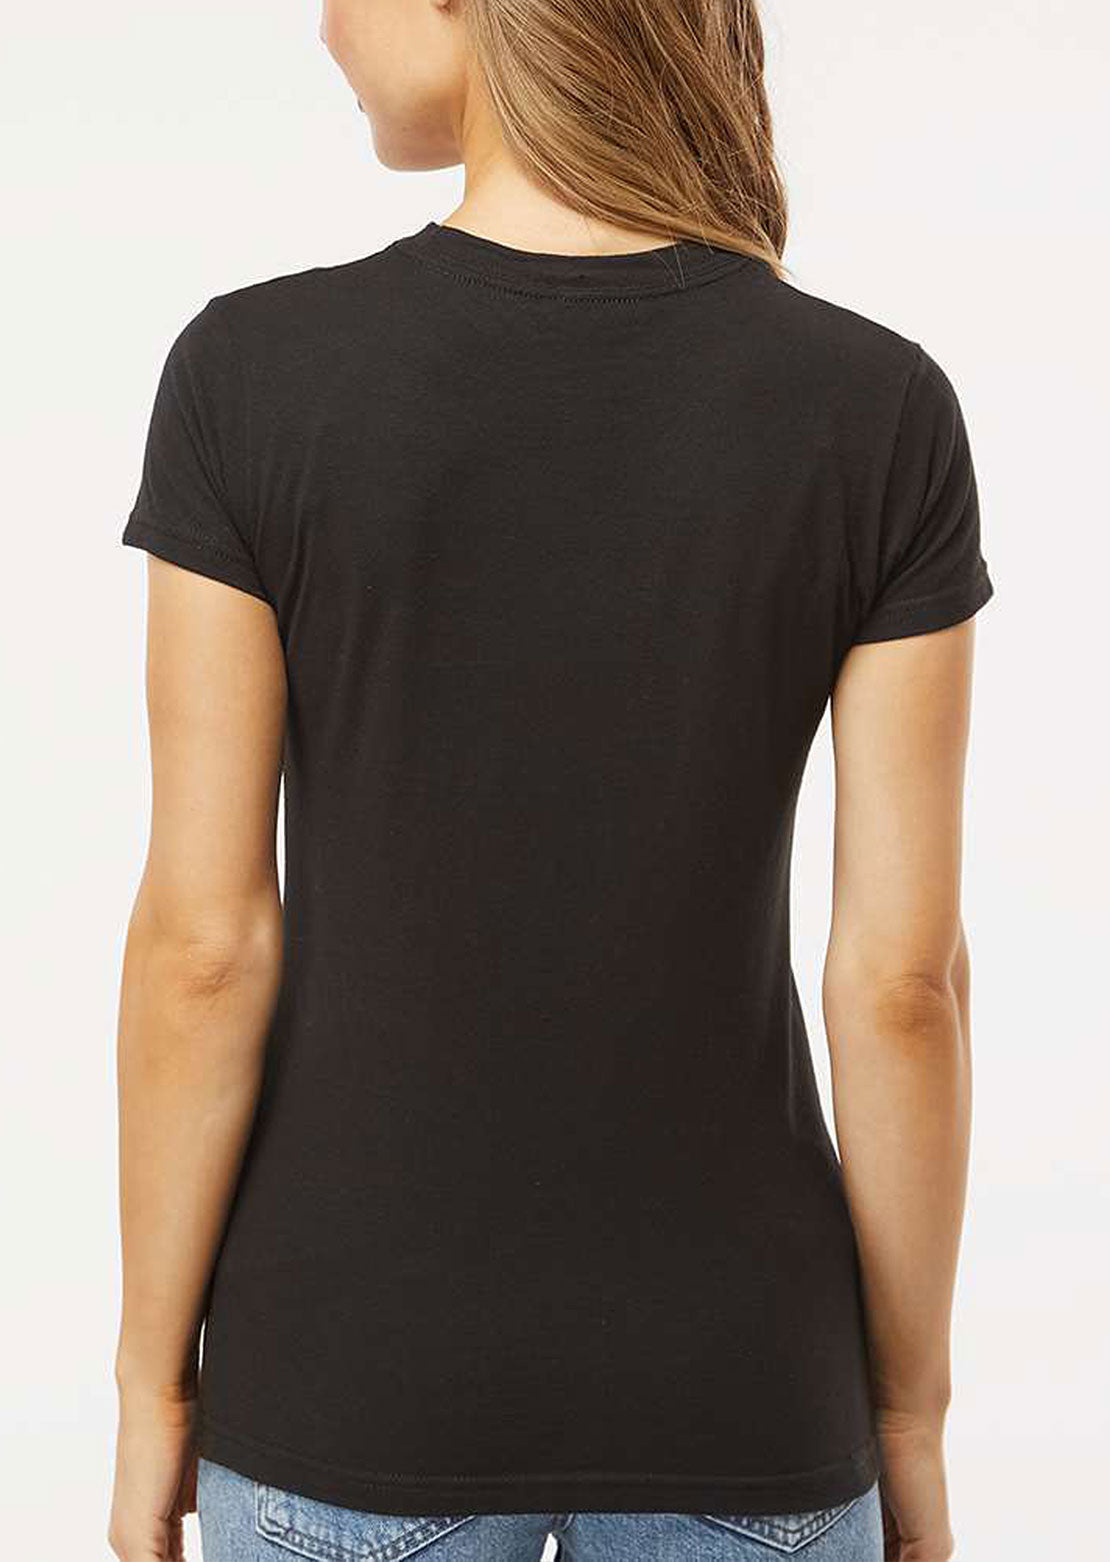 AN-MORIN T-Shirt Femme Black